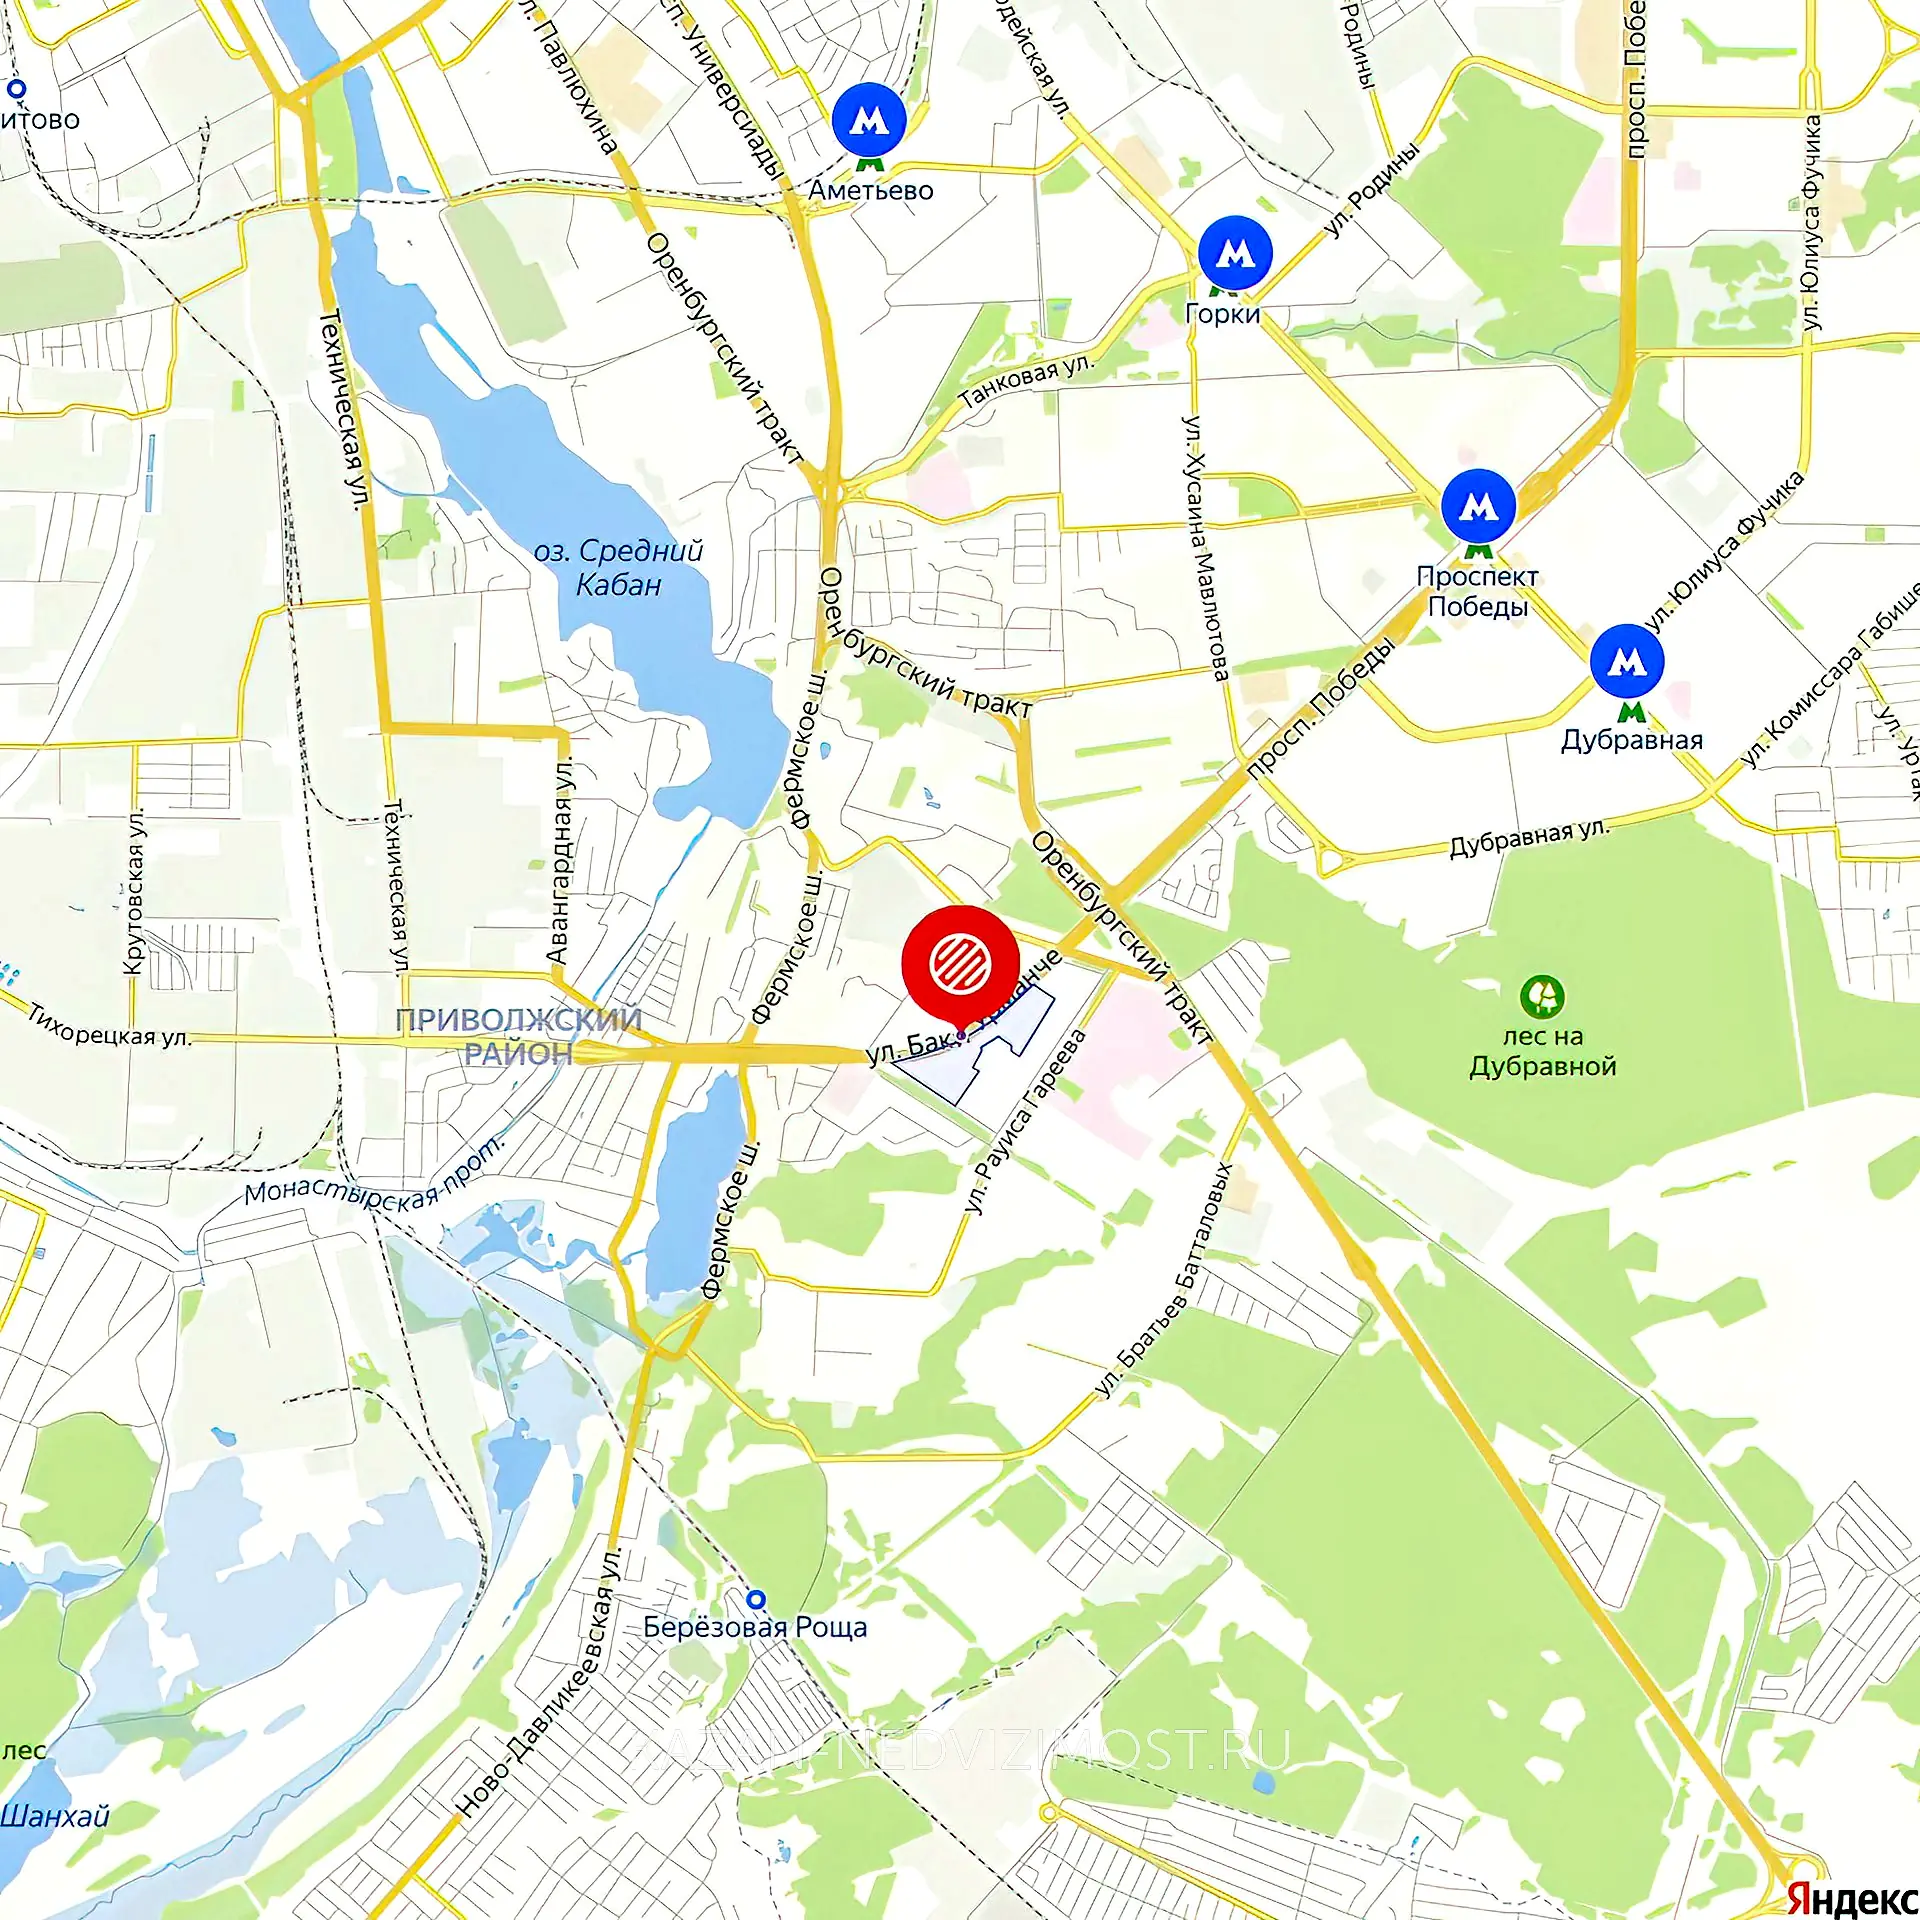 Расположение и маршрут на карте от ЖК Солнечный город до центра города